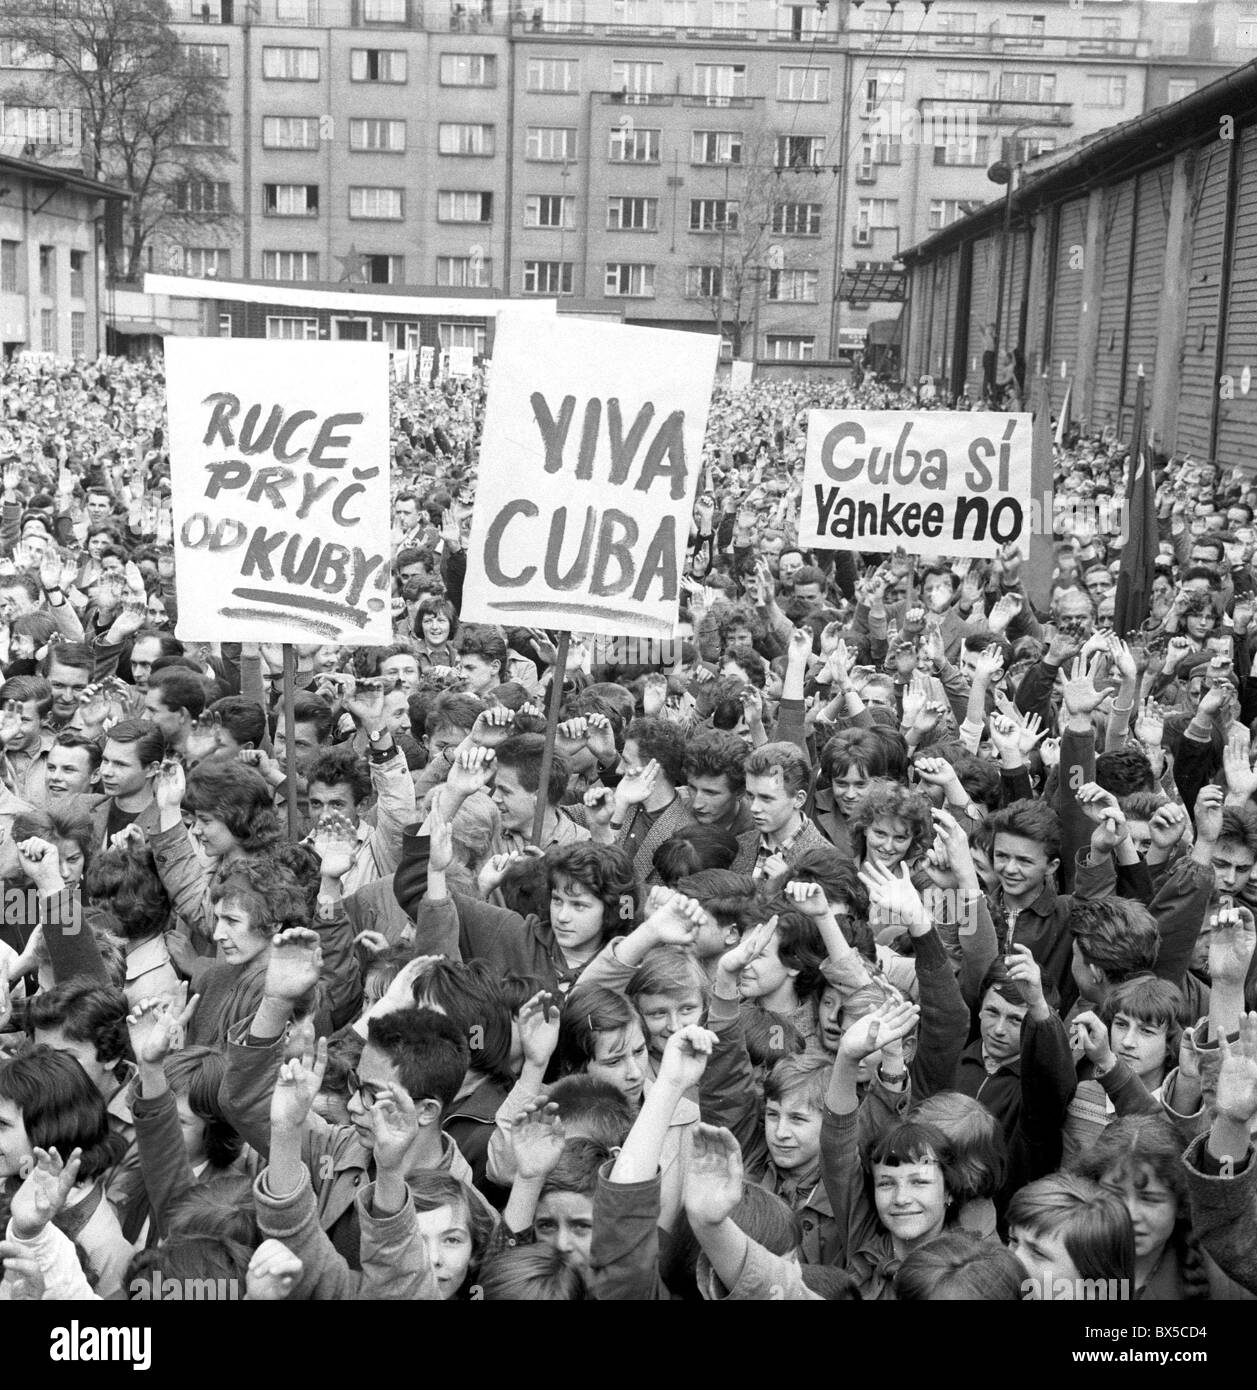 protest, Cuba invasion Stock Photo